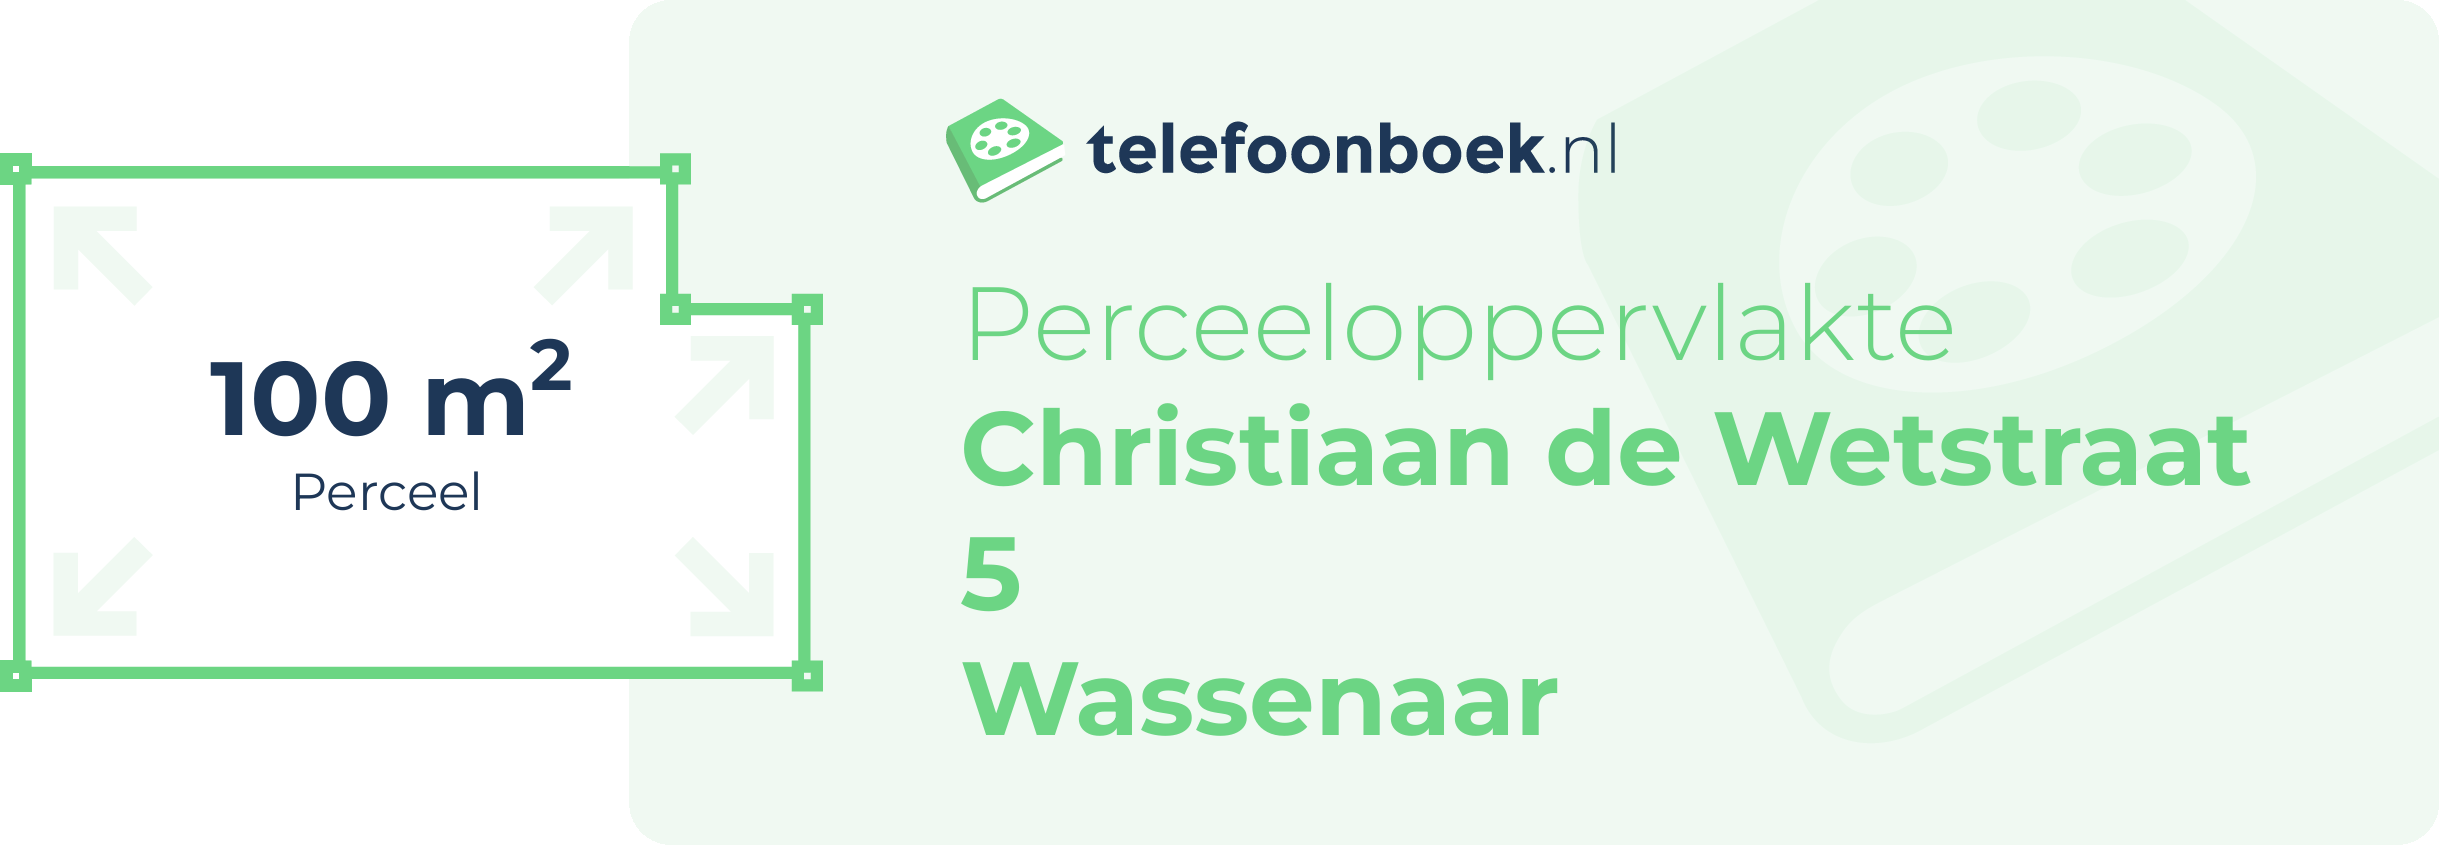 Perceeloppervlakte Christiaan De Wetstraat 5 Wassenaar